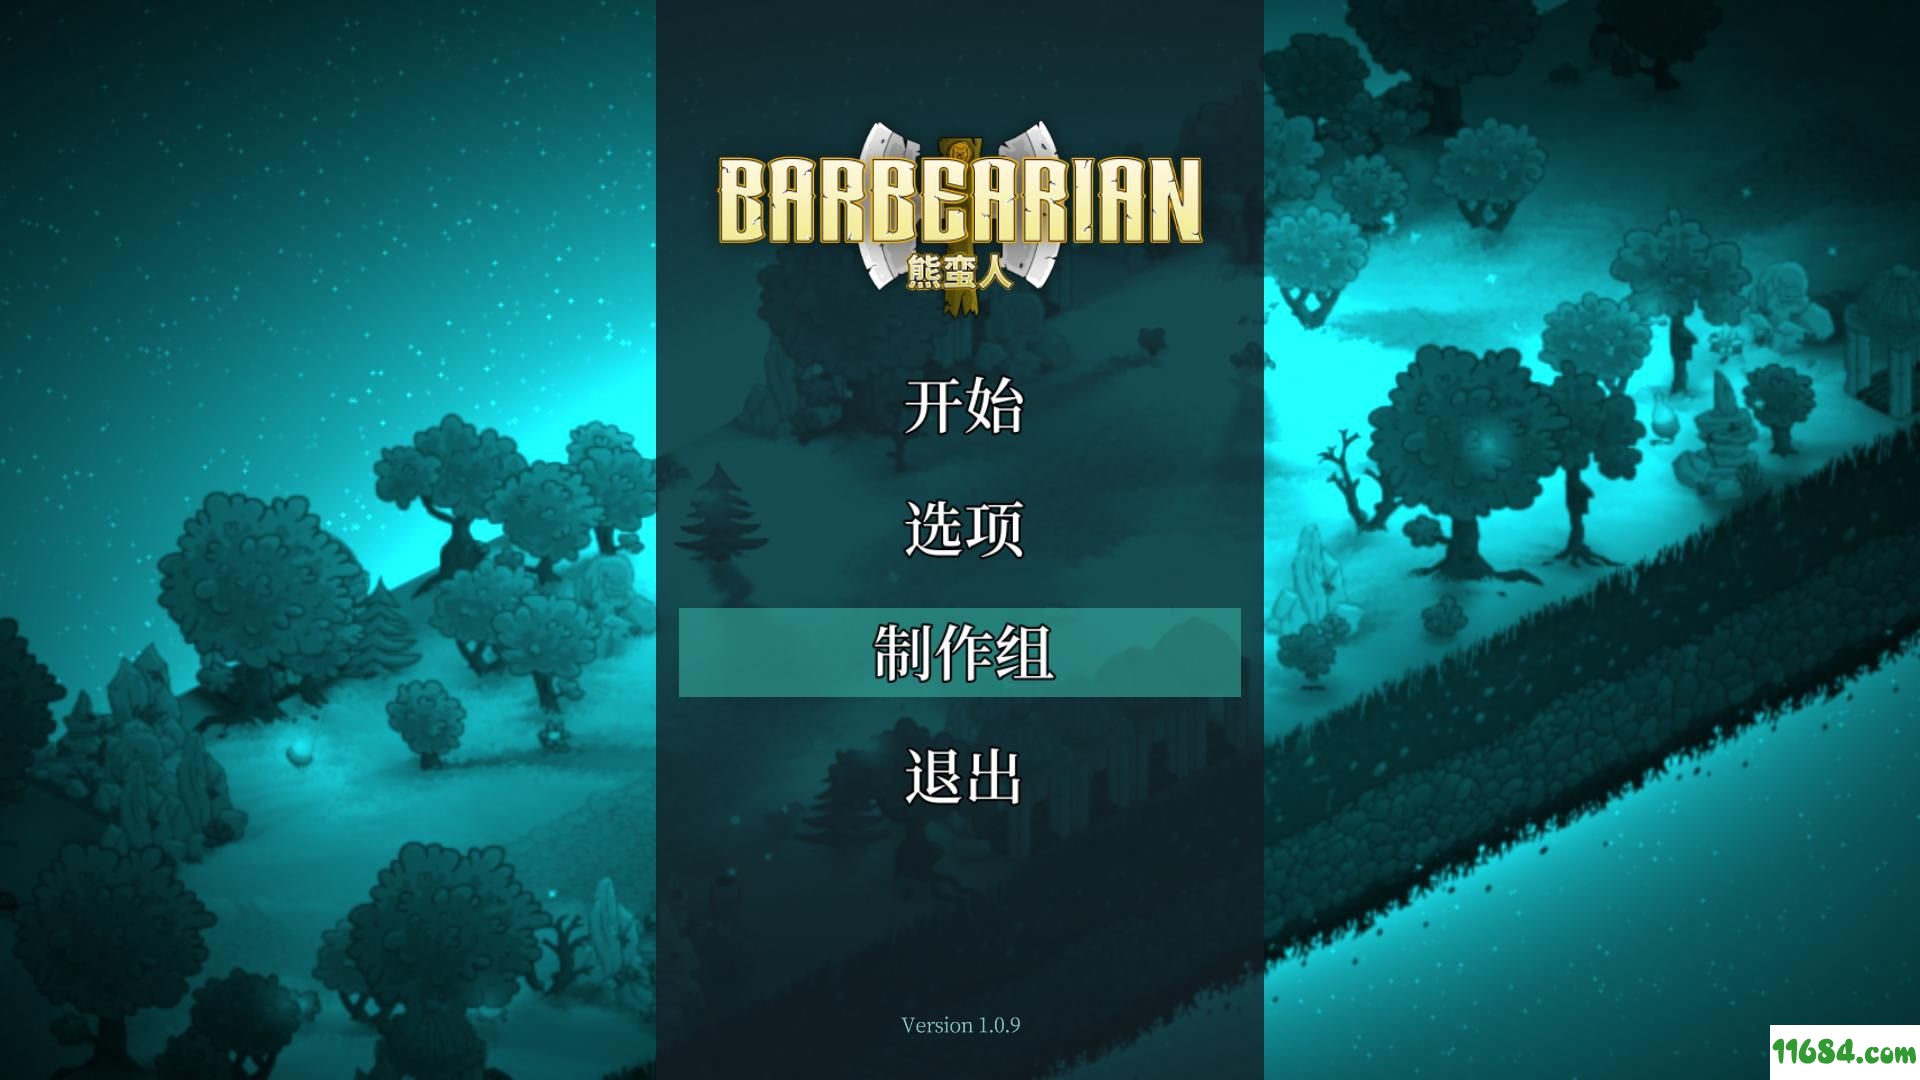 熊蛮人游戏下载-熊蛮人Barbearian v1.0.10 免安装中文版下载